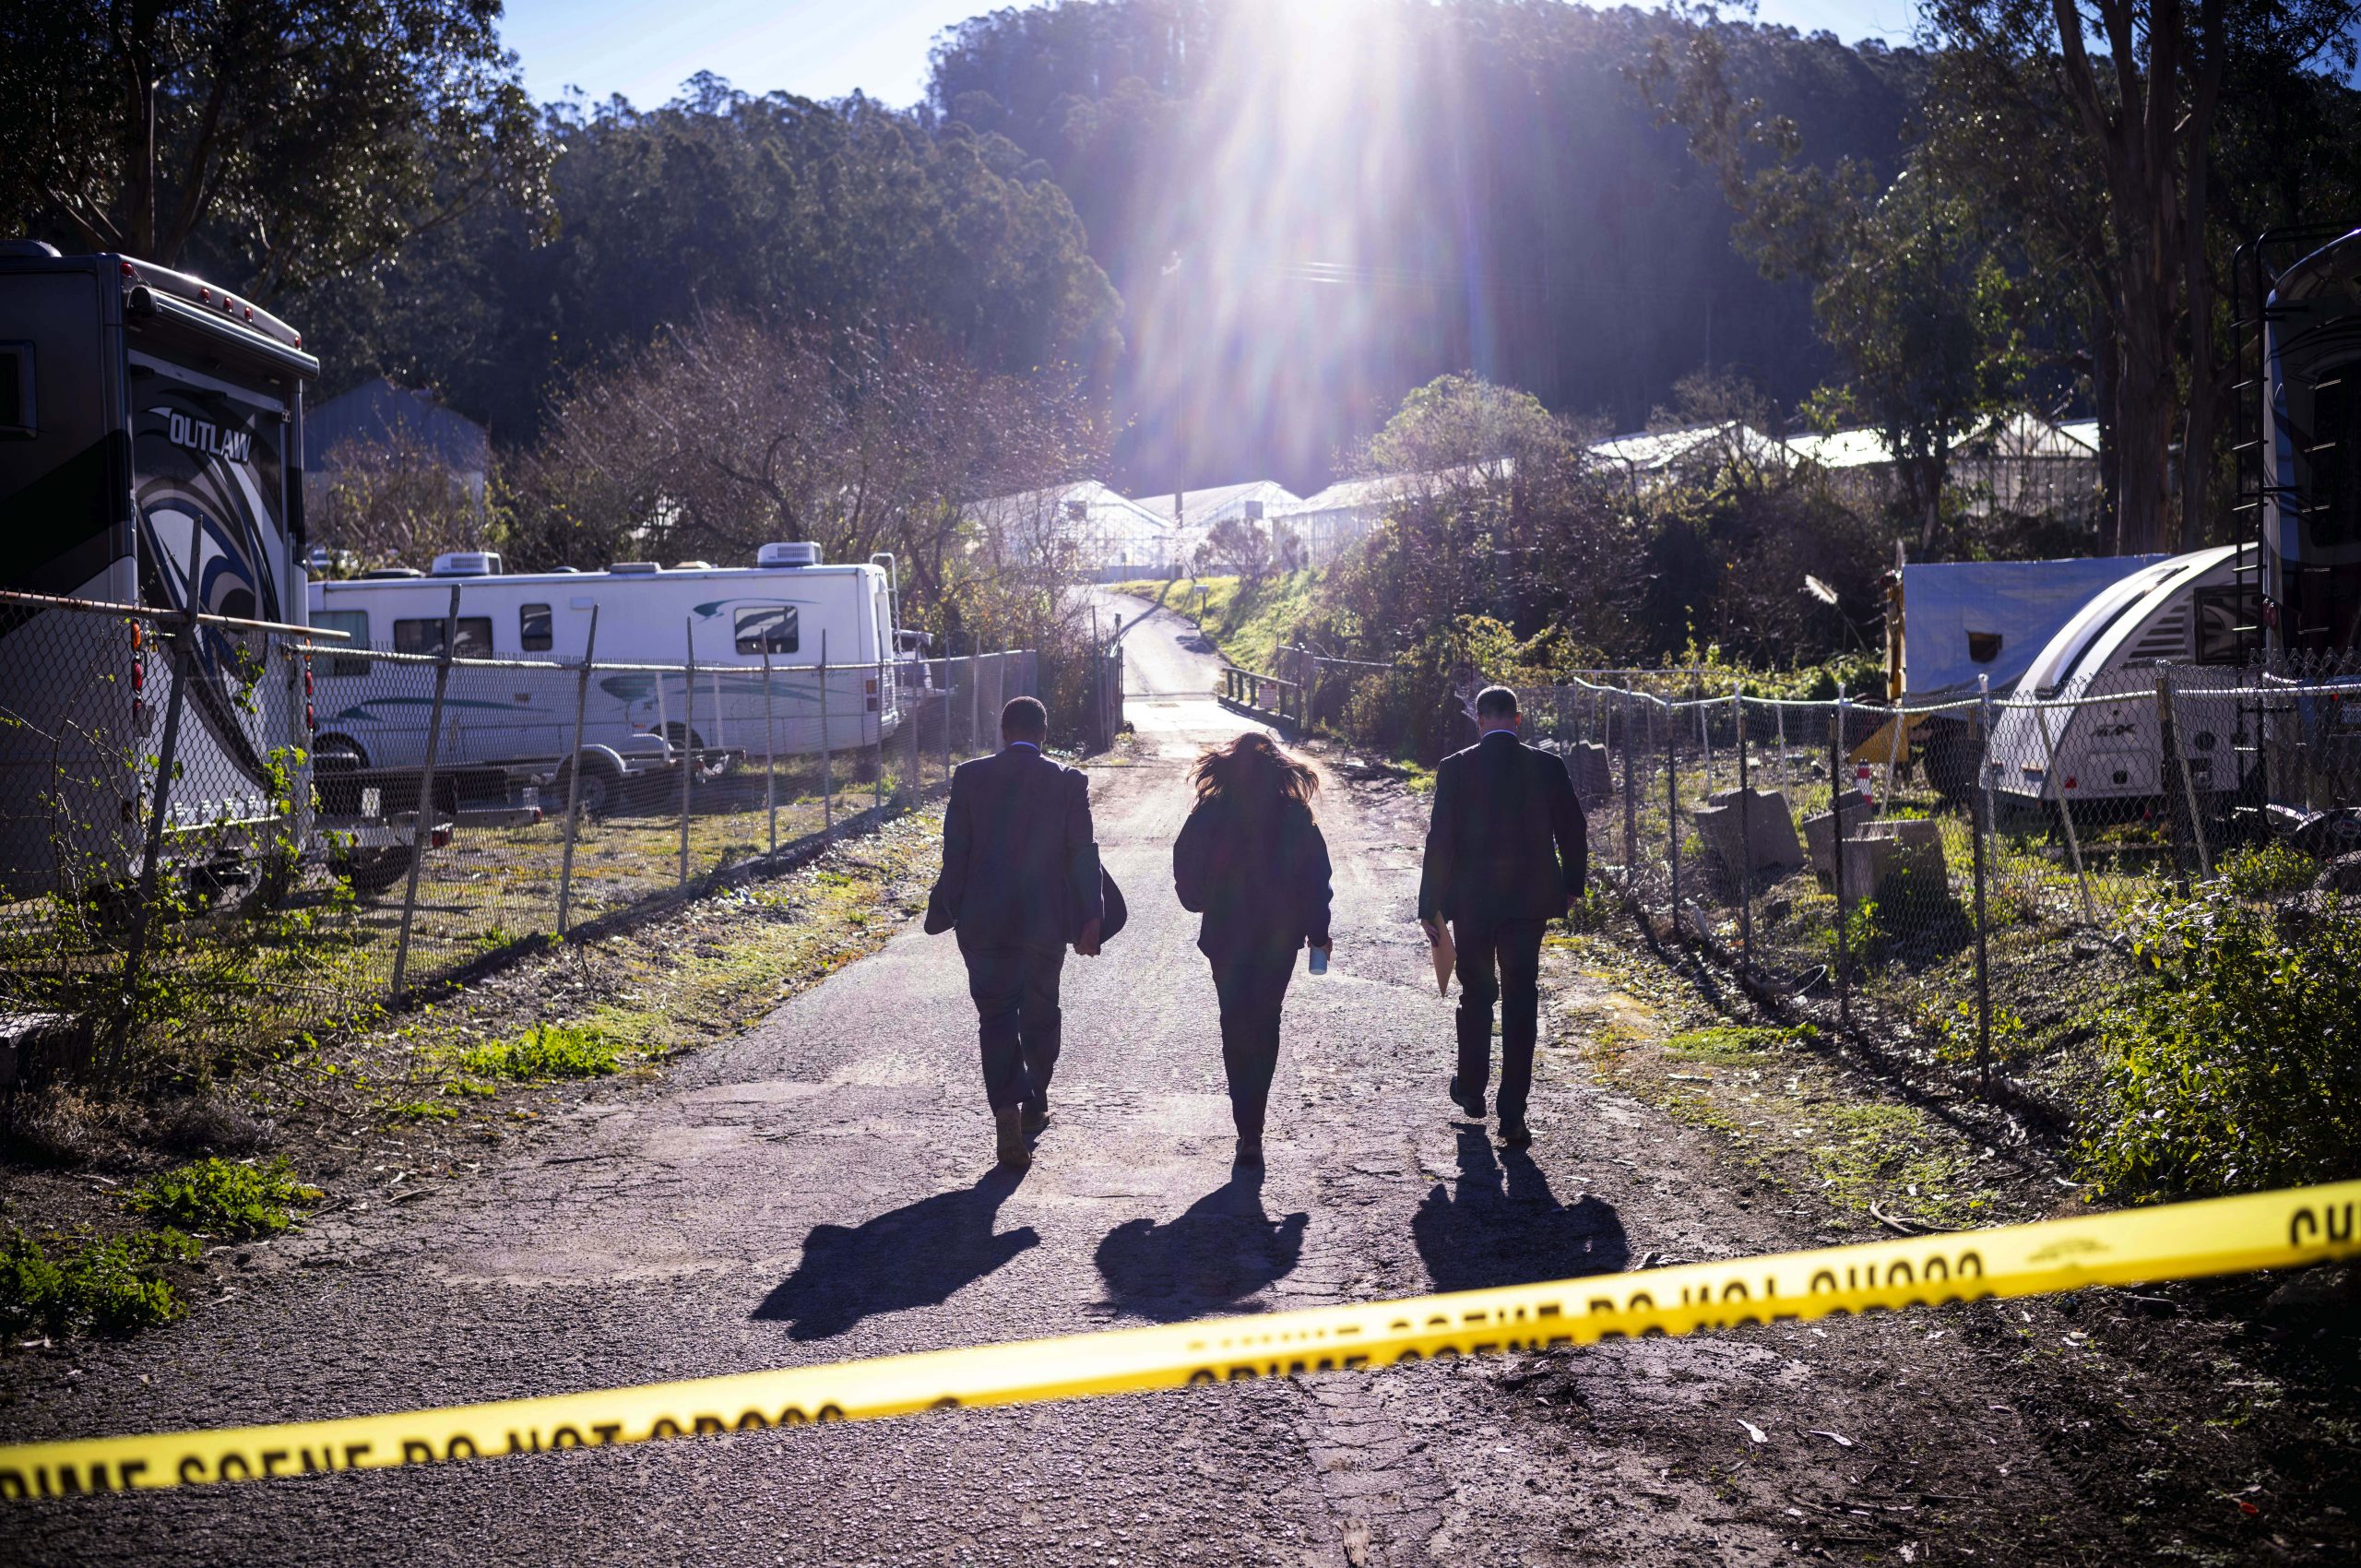 加州农场枪击案嫌犯承认有罪 称自己受精神病困扰、被霸凌